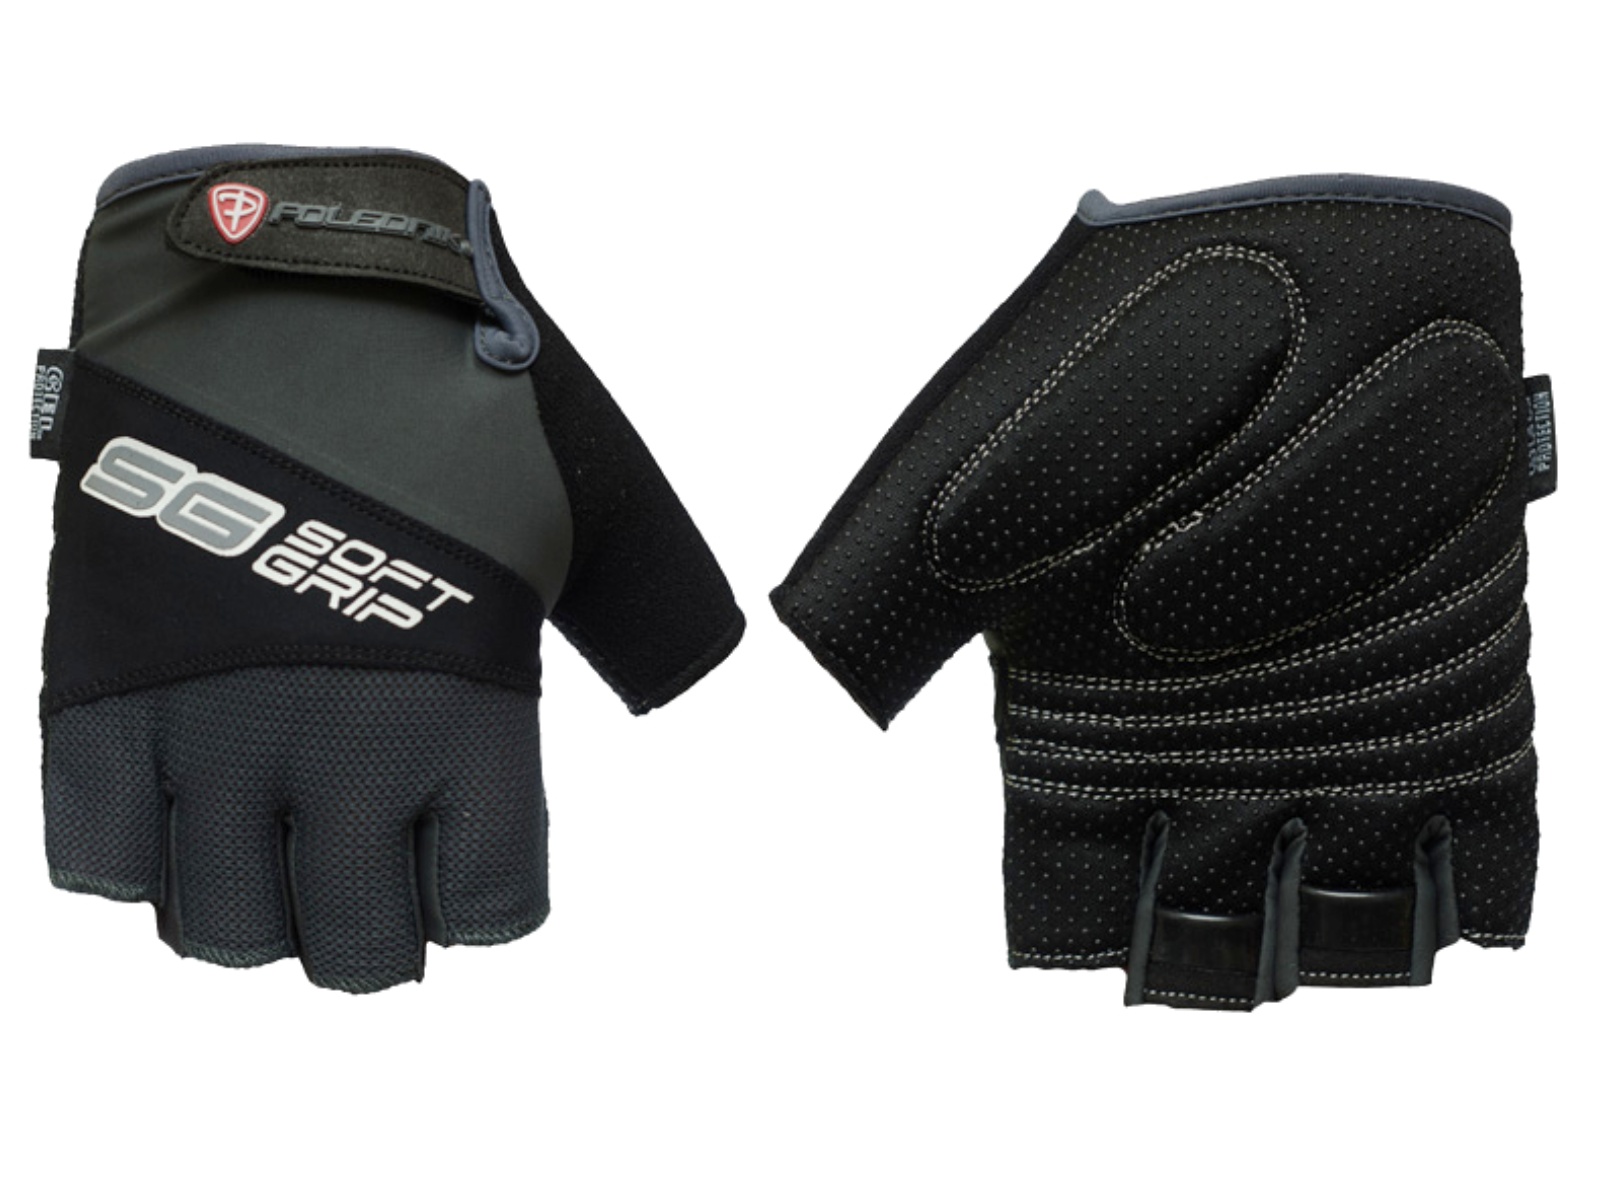 Cyklo rukavice POLEDNIK Soft Grip pánské velikost S - černé